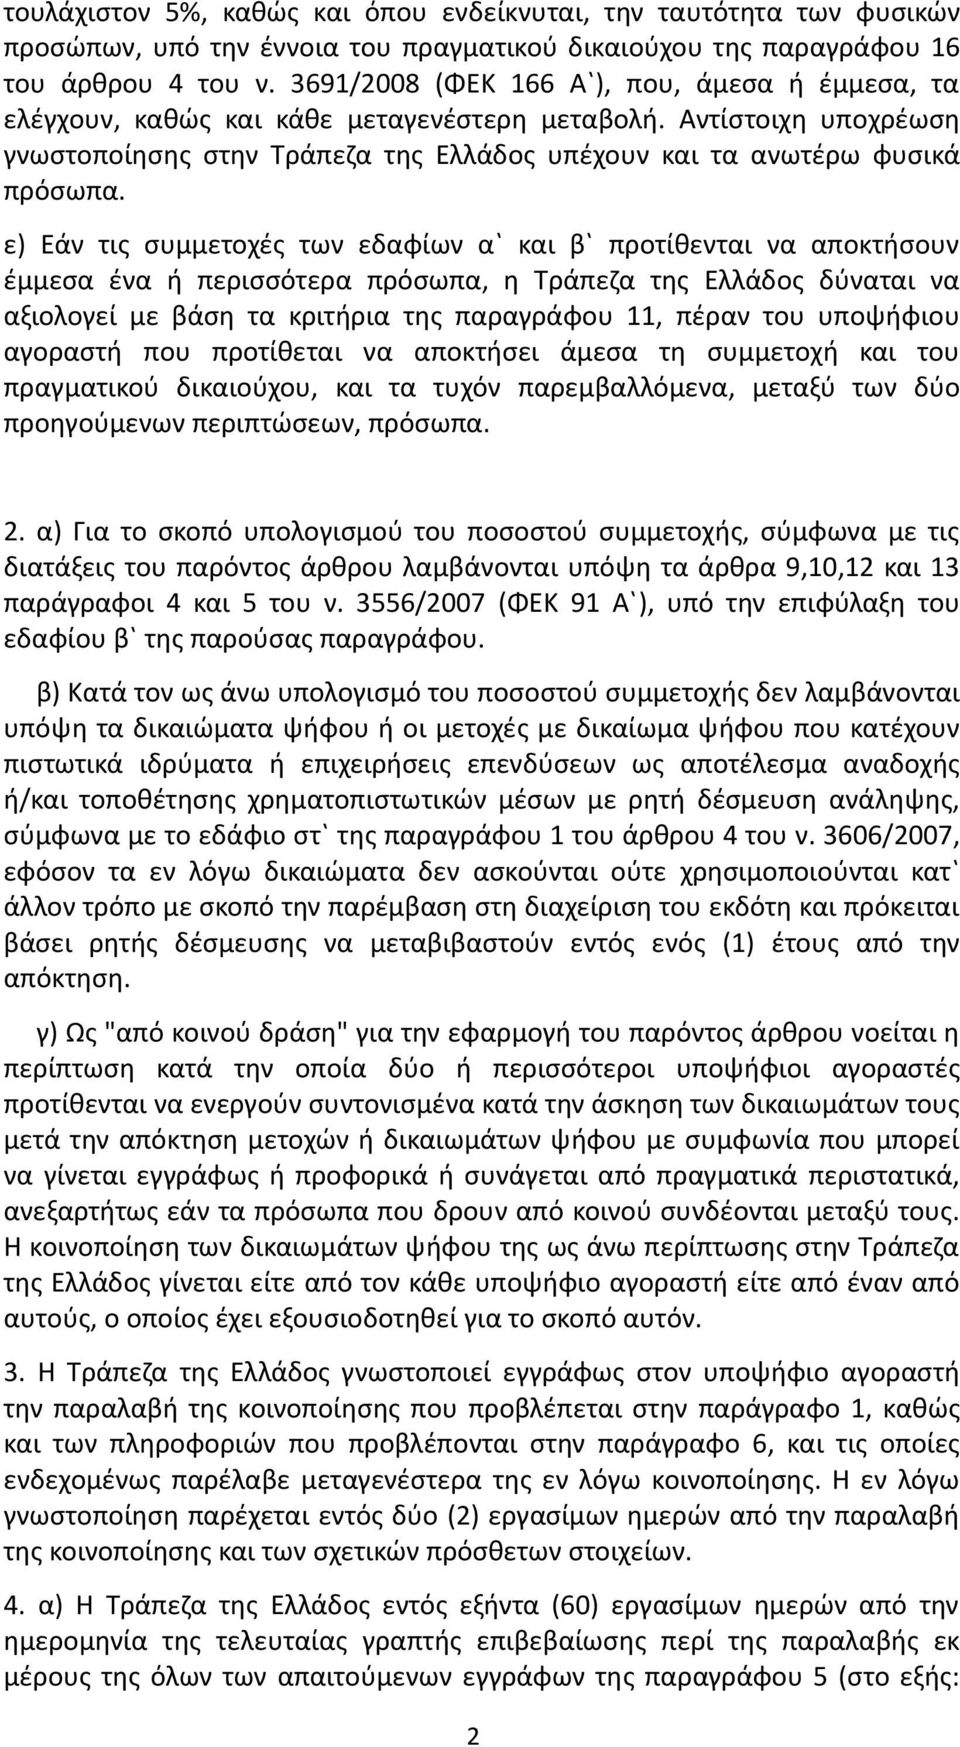 ε) Εάν τις συμμετοχές των εδαφίων α` και β` προτίθενται να αποκτήσουν έμμεσα ένα ή περισσότερα πρόσωπα, η Τράπεζα της Ελλάδος δύναται να αξιολογεί με βάση τα κριτήρια της παραγράφου 11, πέραν του